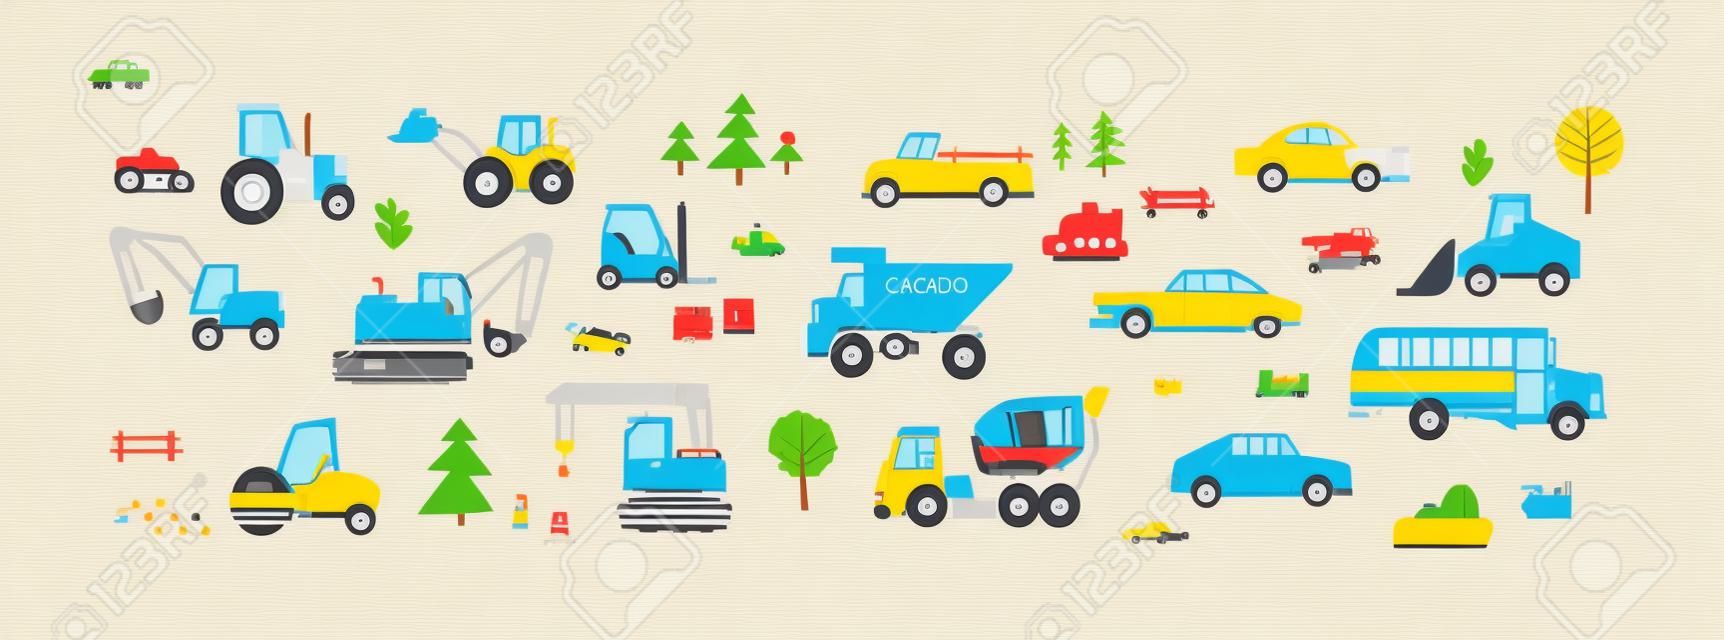 Lindos autos al estilo escandinavo. Conjunto infantil de juguetes de transporte por carretera. Tractor, autobús, camión volquete, excavadora, montacargas, taxi y camioneta. Ilustraciones vectoriales planas coloreadas aisladas sobre fondo blanco